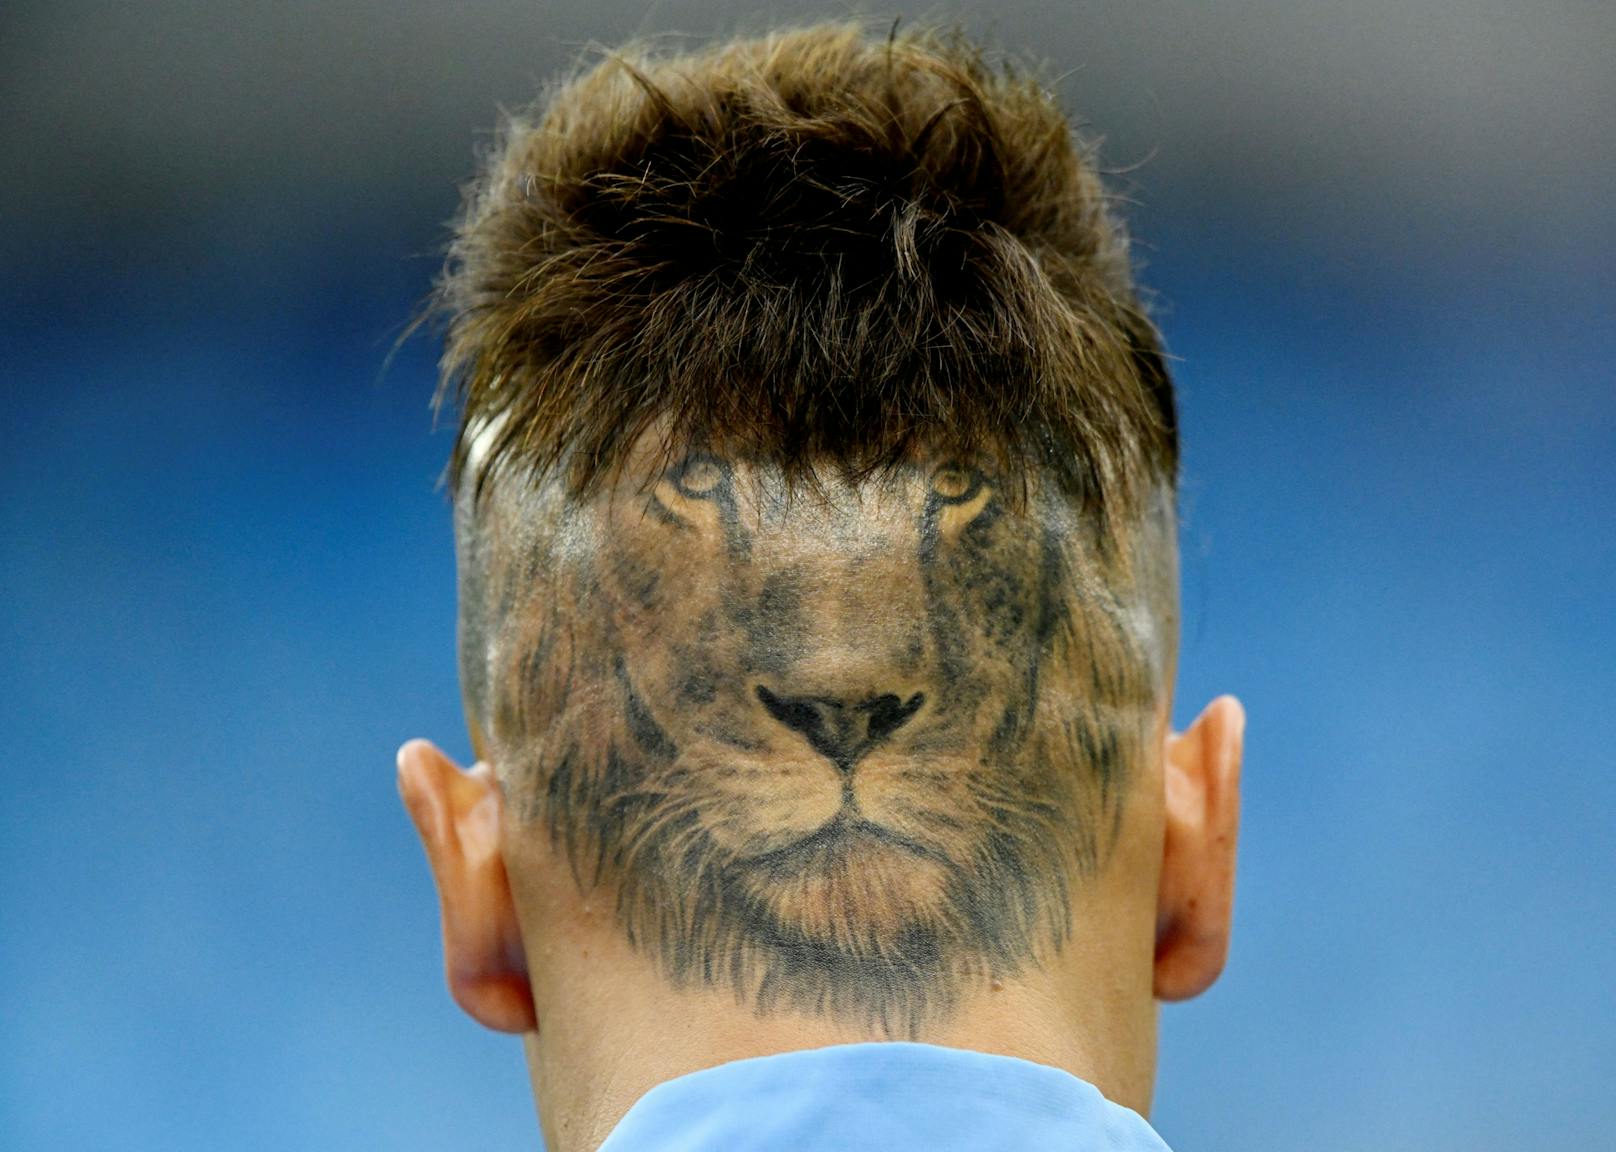 Sebastian Sosa verpasst seinem Löwen eine schnittige Frisur.